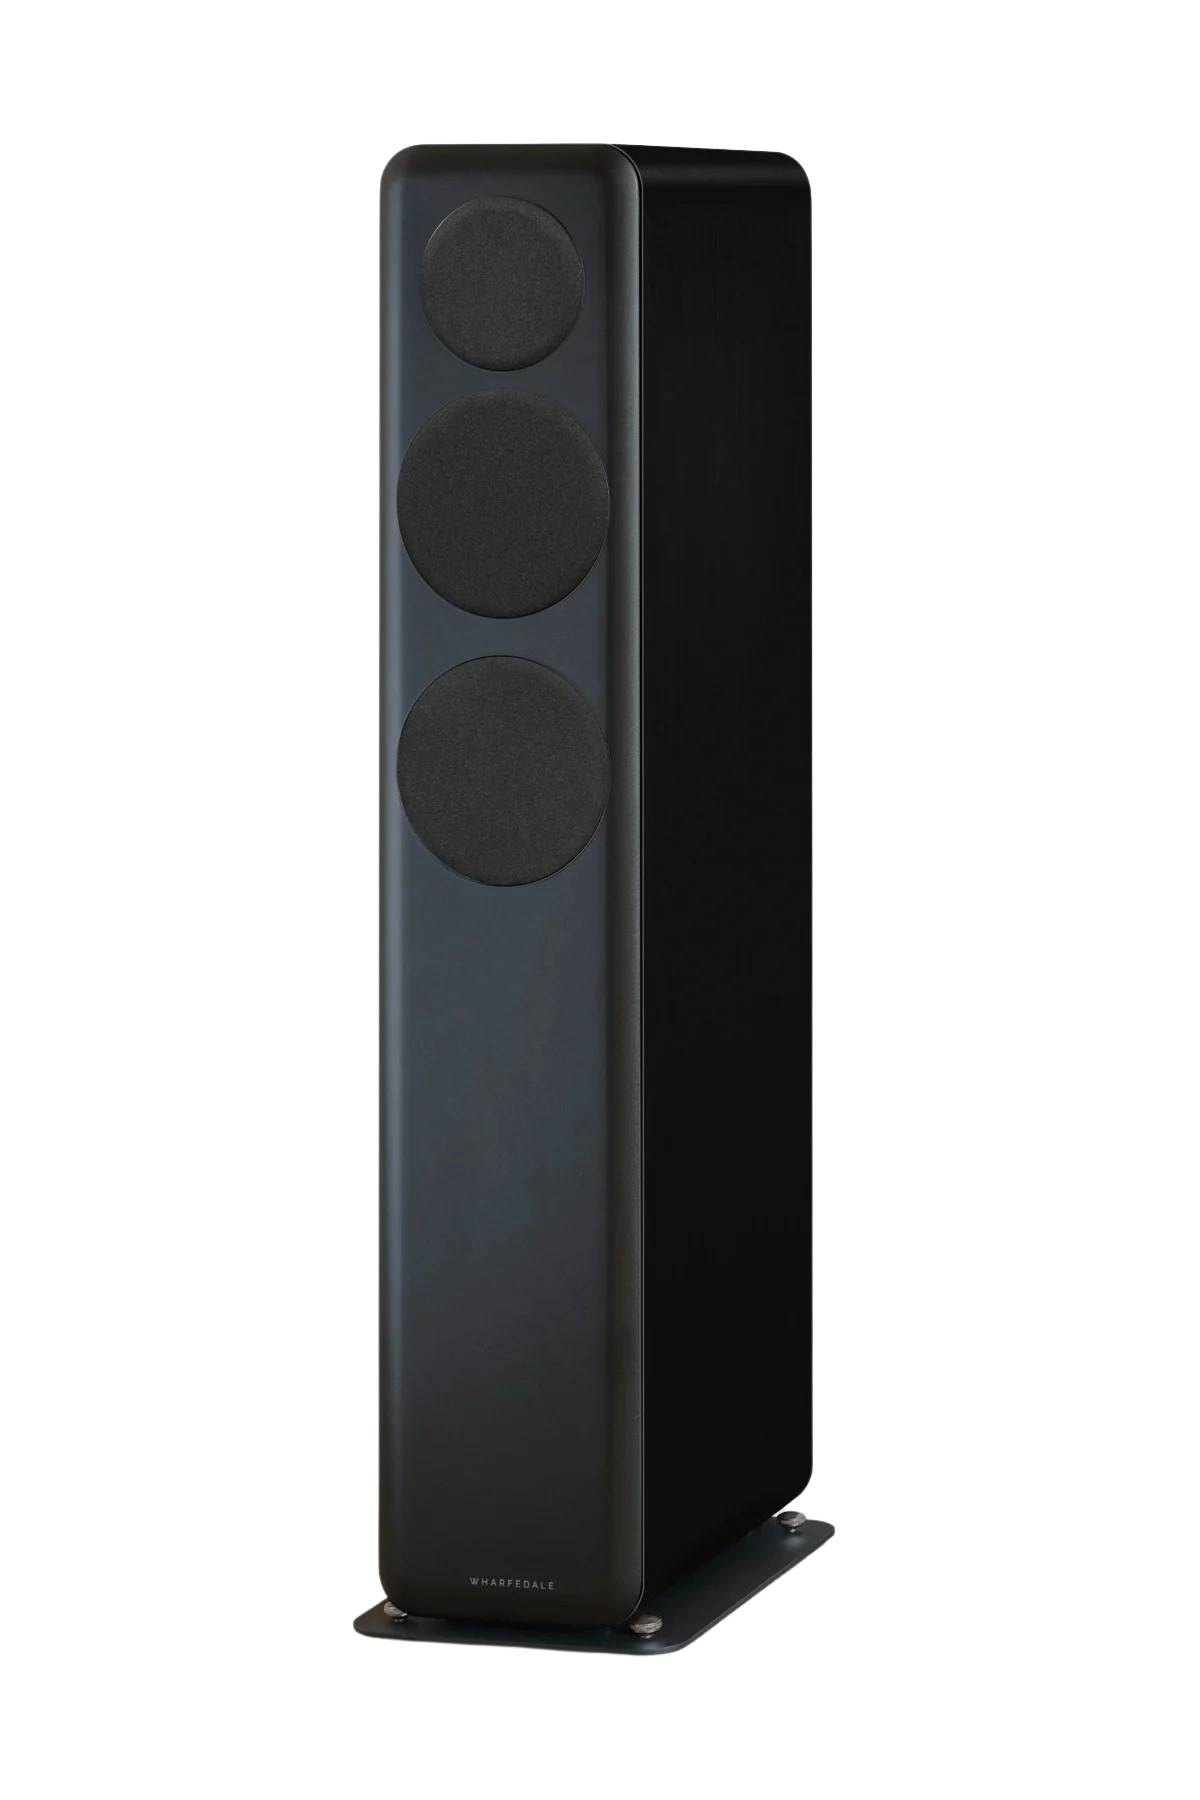 Wharfedale-Wharfedale D330 floorstanding hifi speakers PAIR-PremiumHIFI